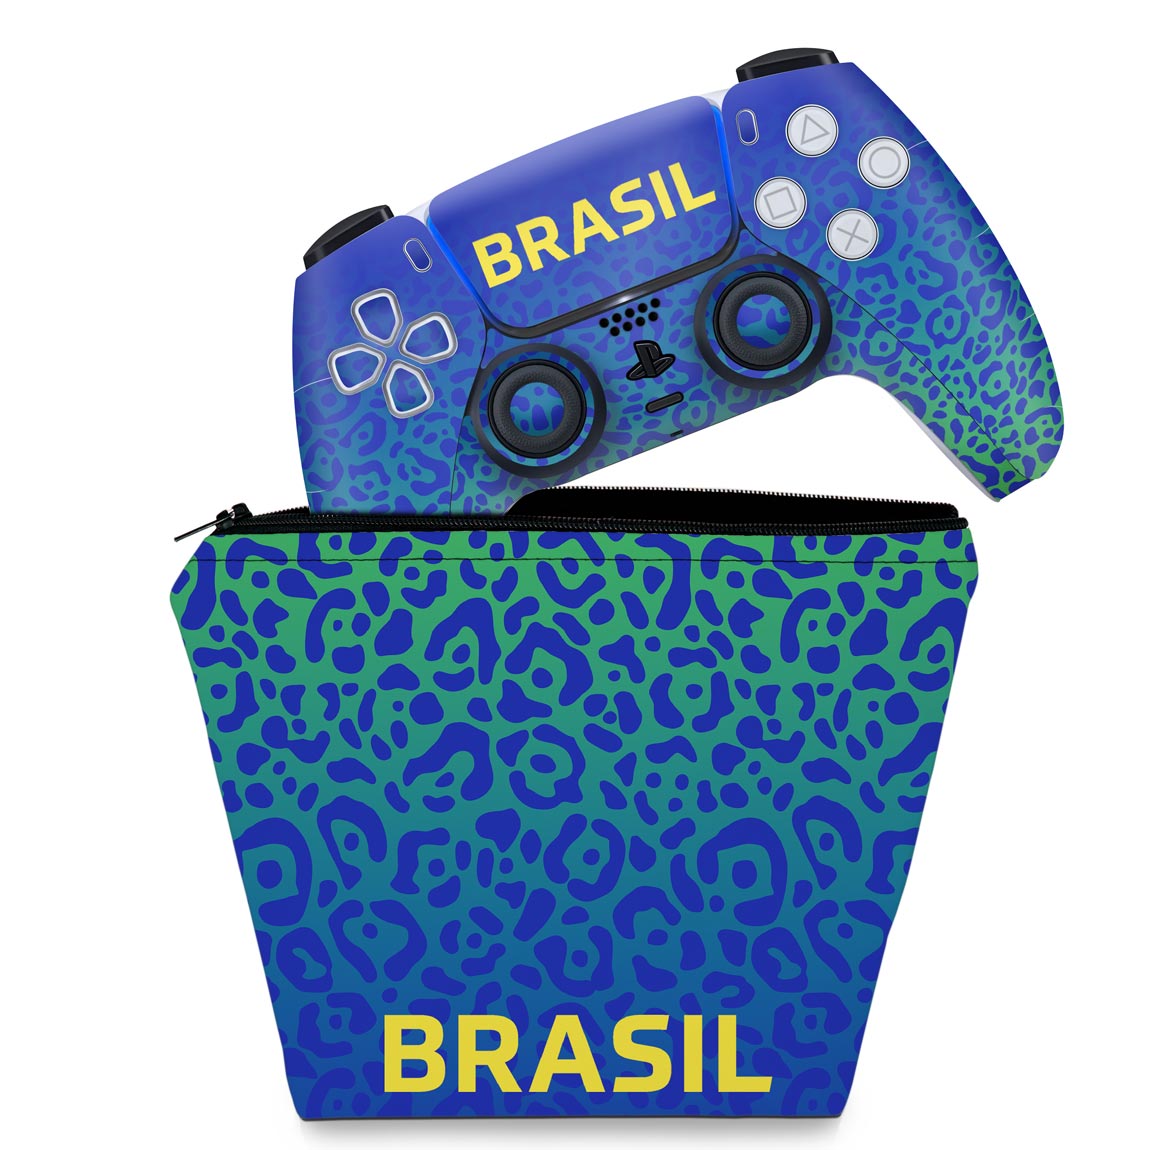 PS5 Slim chega ao Brasil; veja detalhes